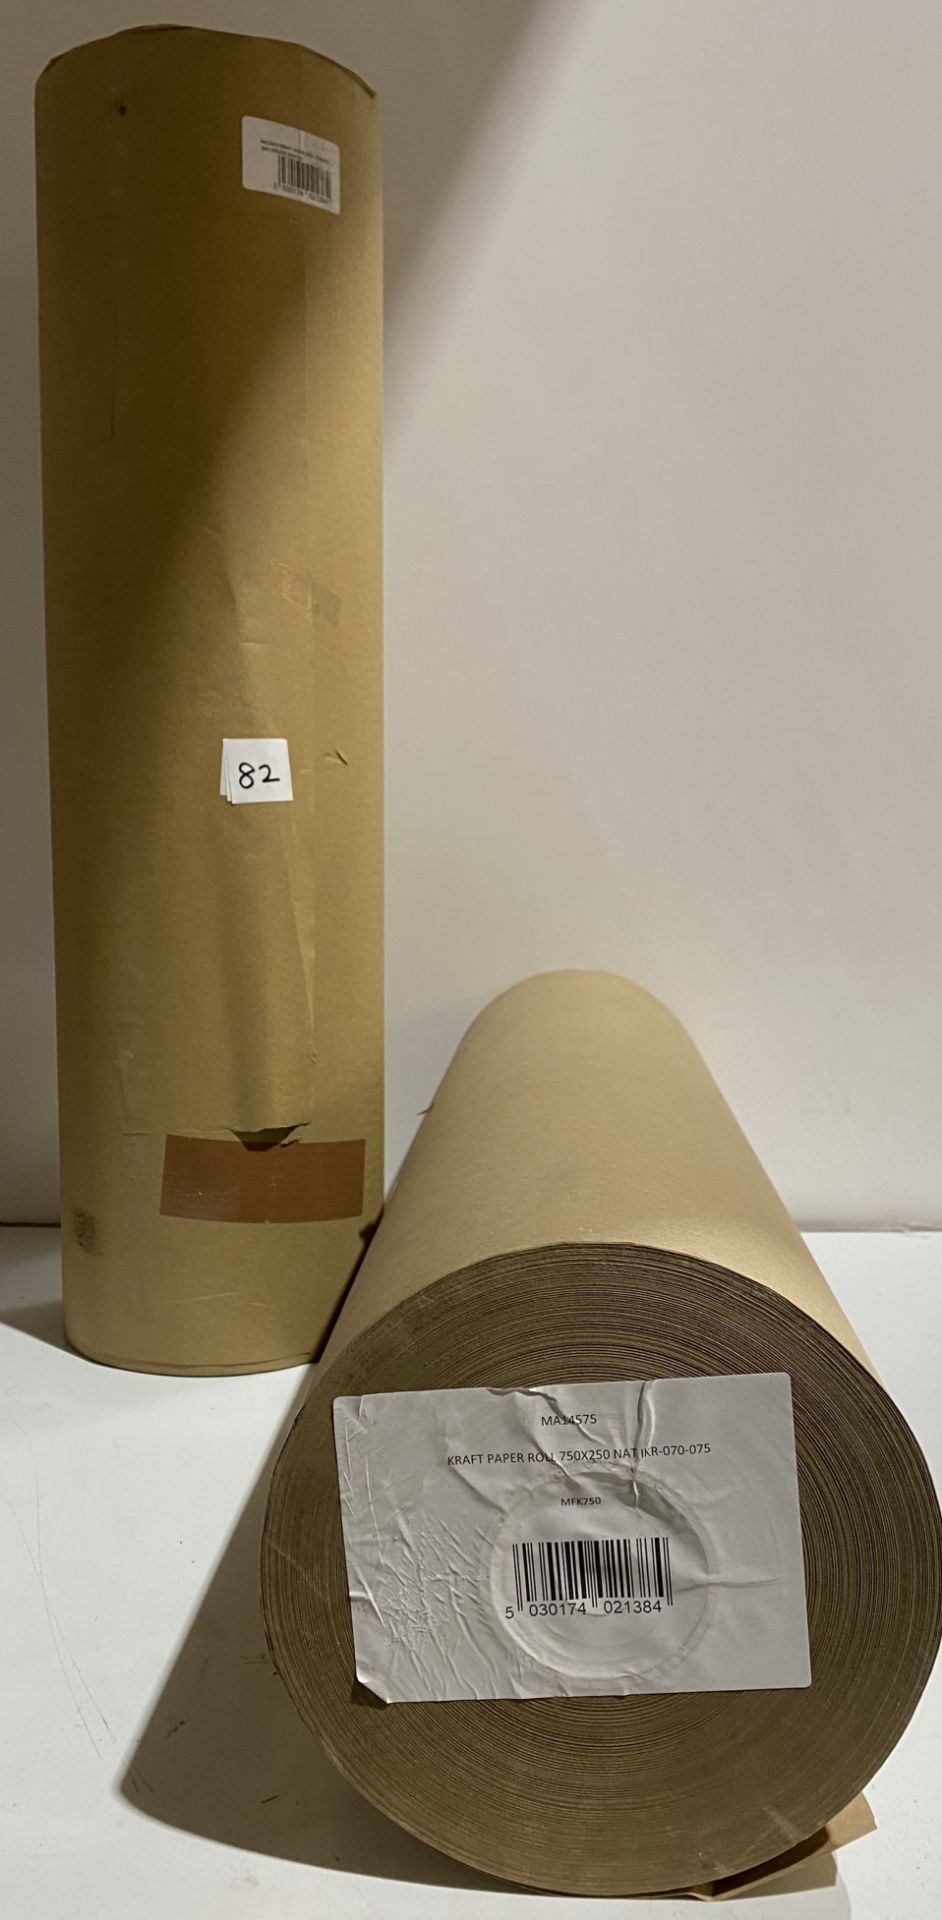 2 x rolls brown kraft paper 750mmx250mm MA14575 (saleroom location: G10)